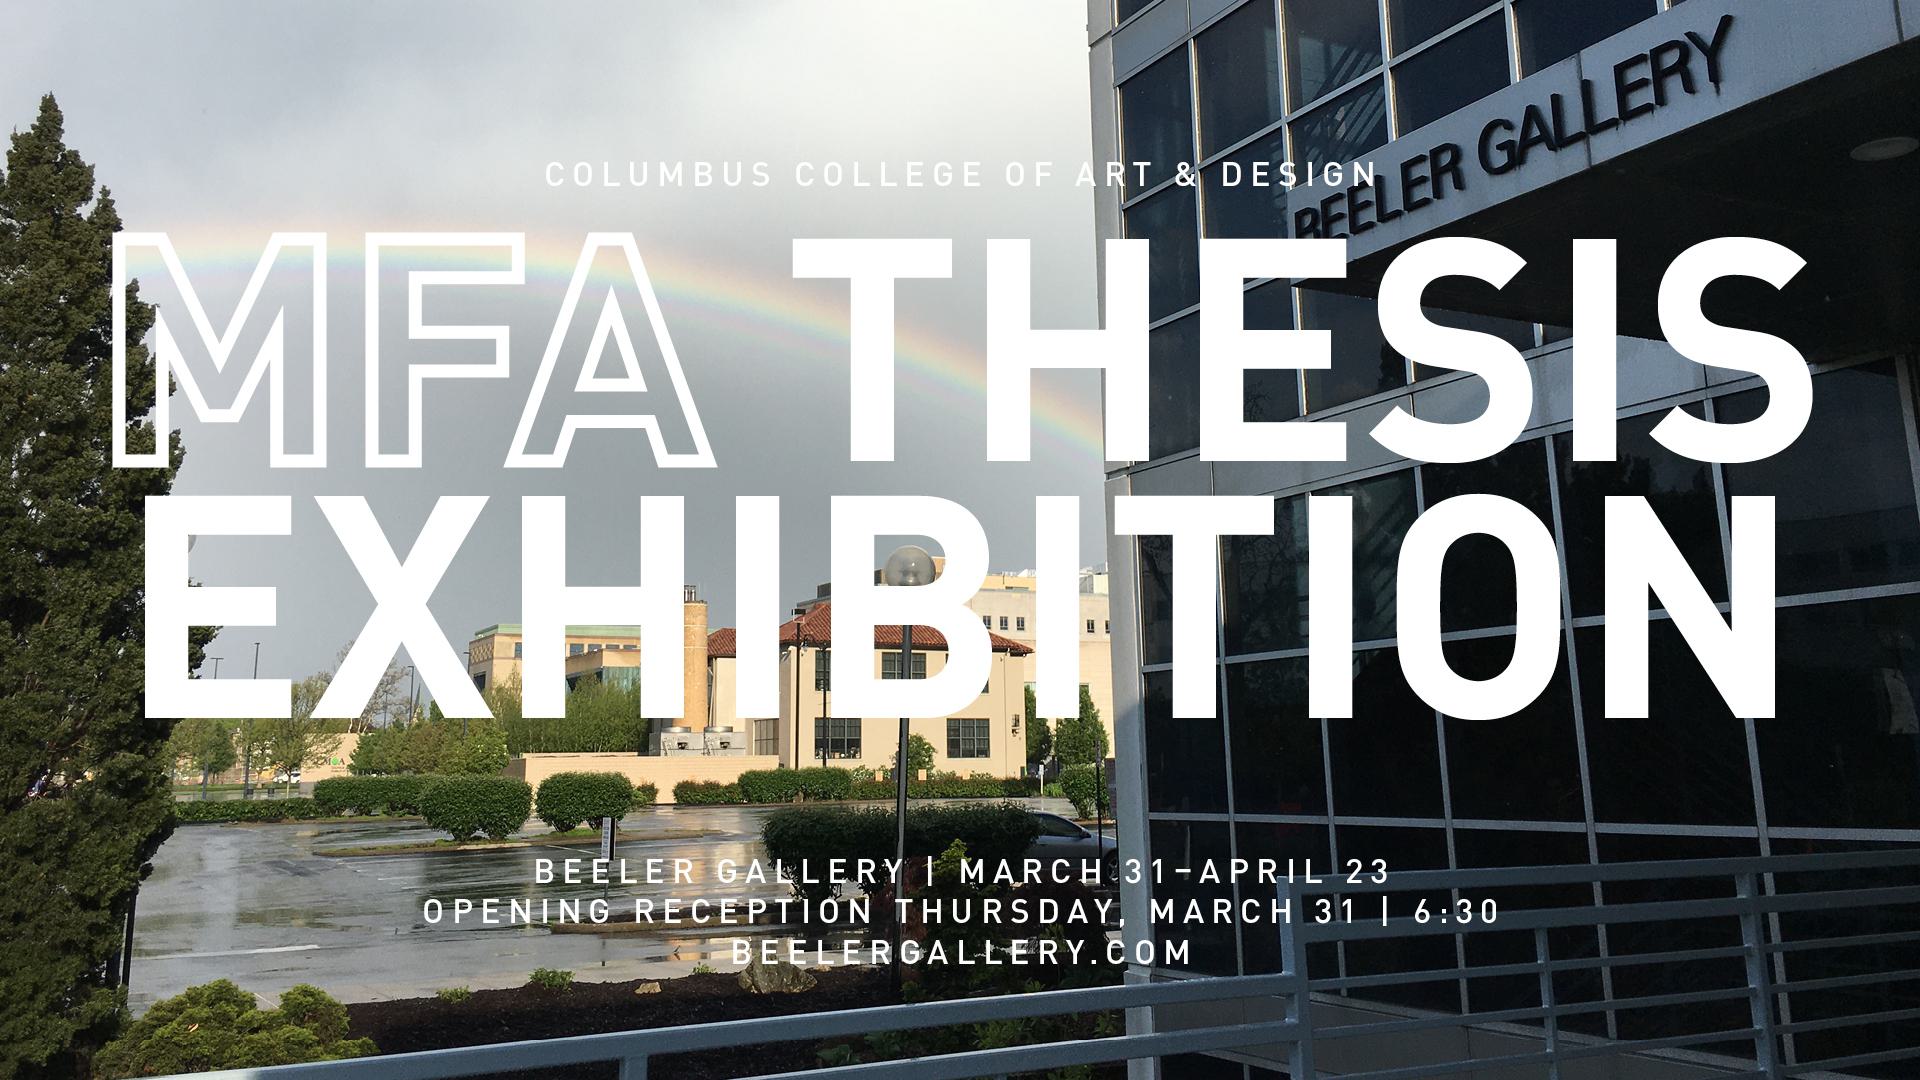 MFA Thesis Exhibition